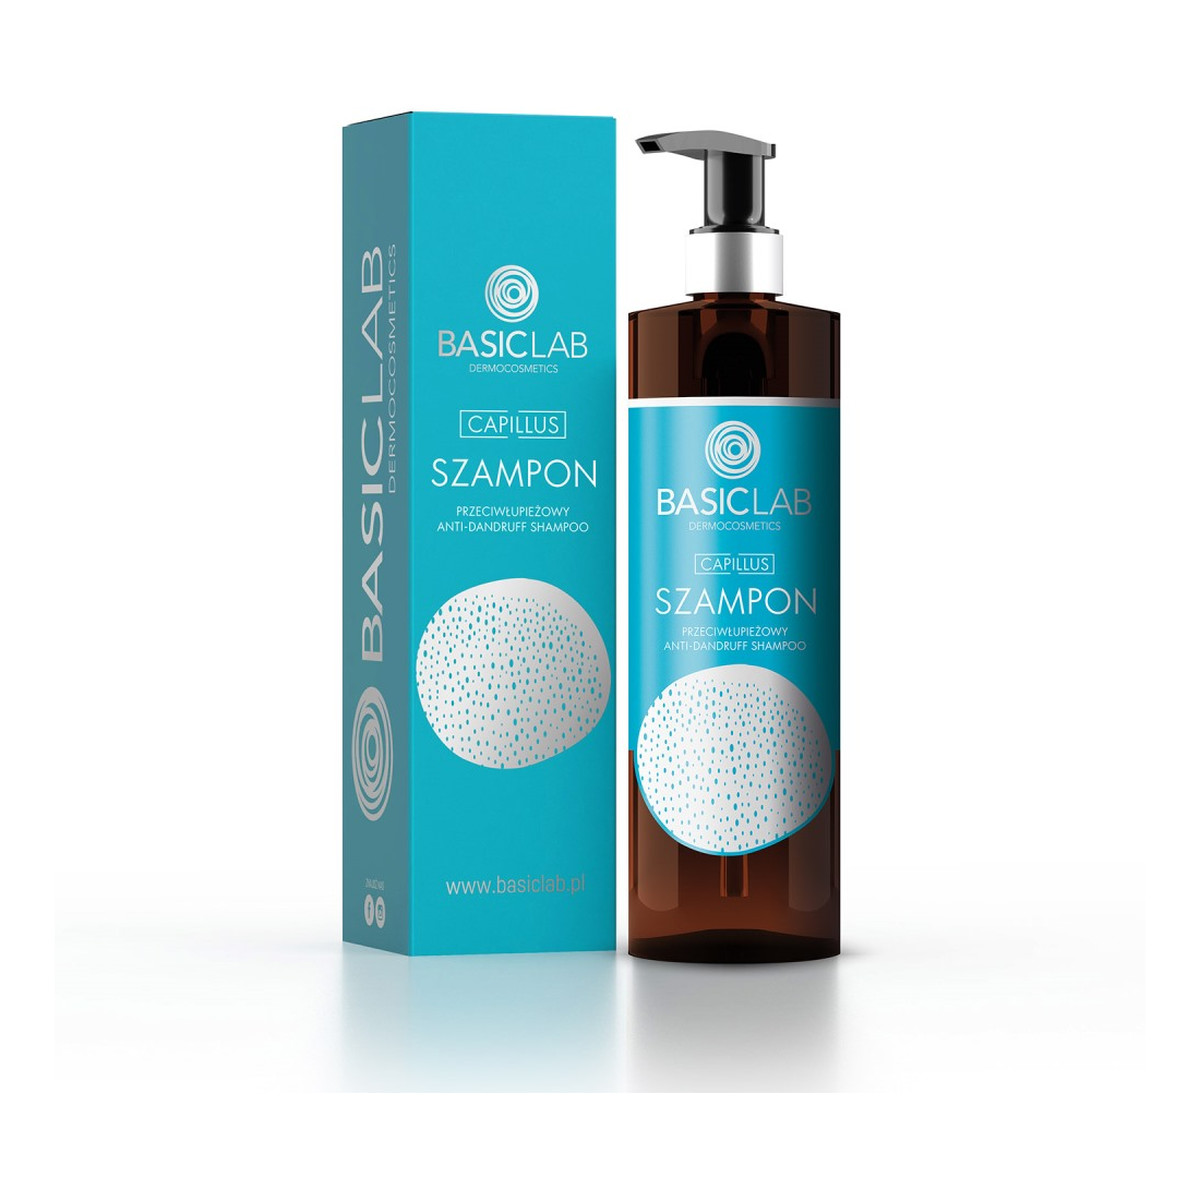 Basiclab Capillus Shampoo szampon przeciwłupieżowy 300ml